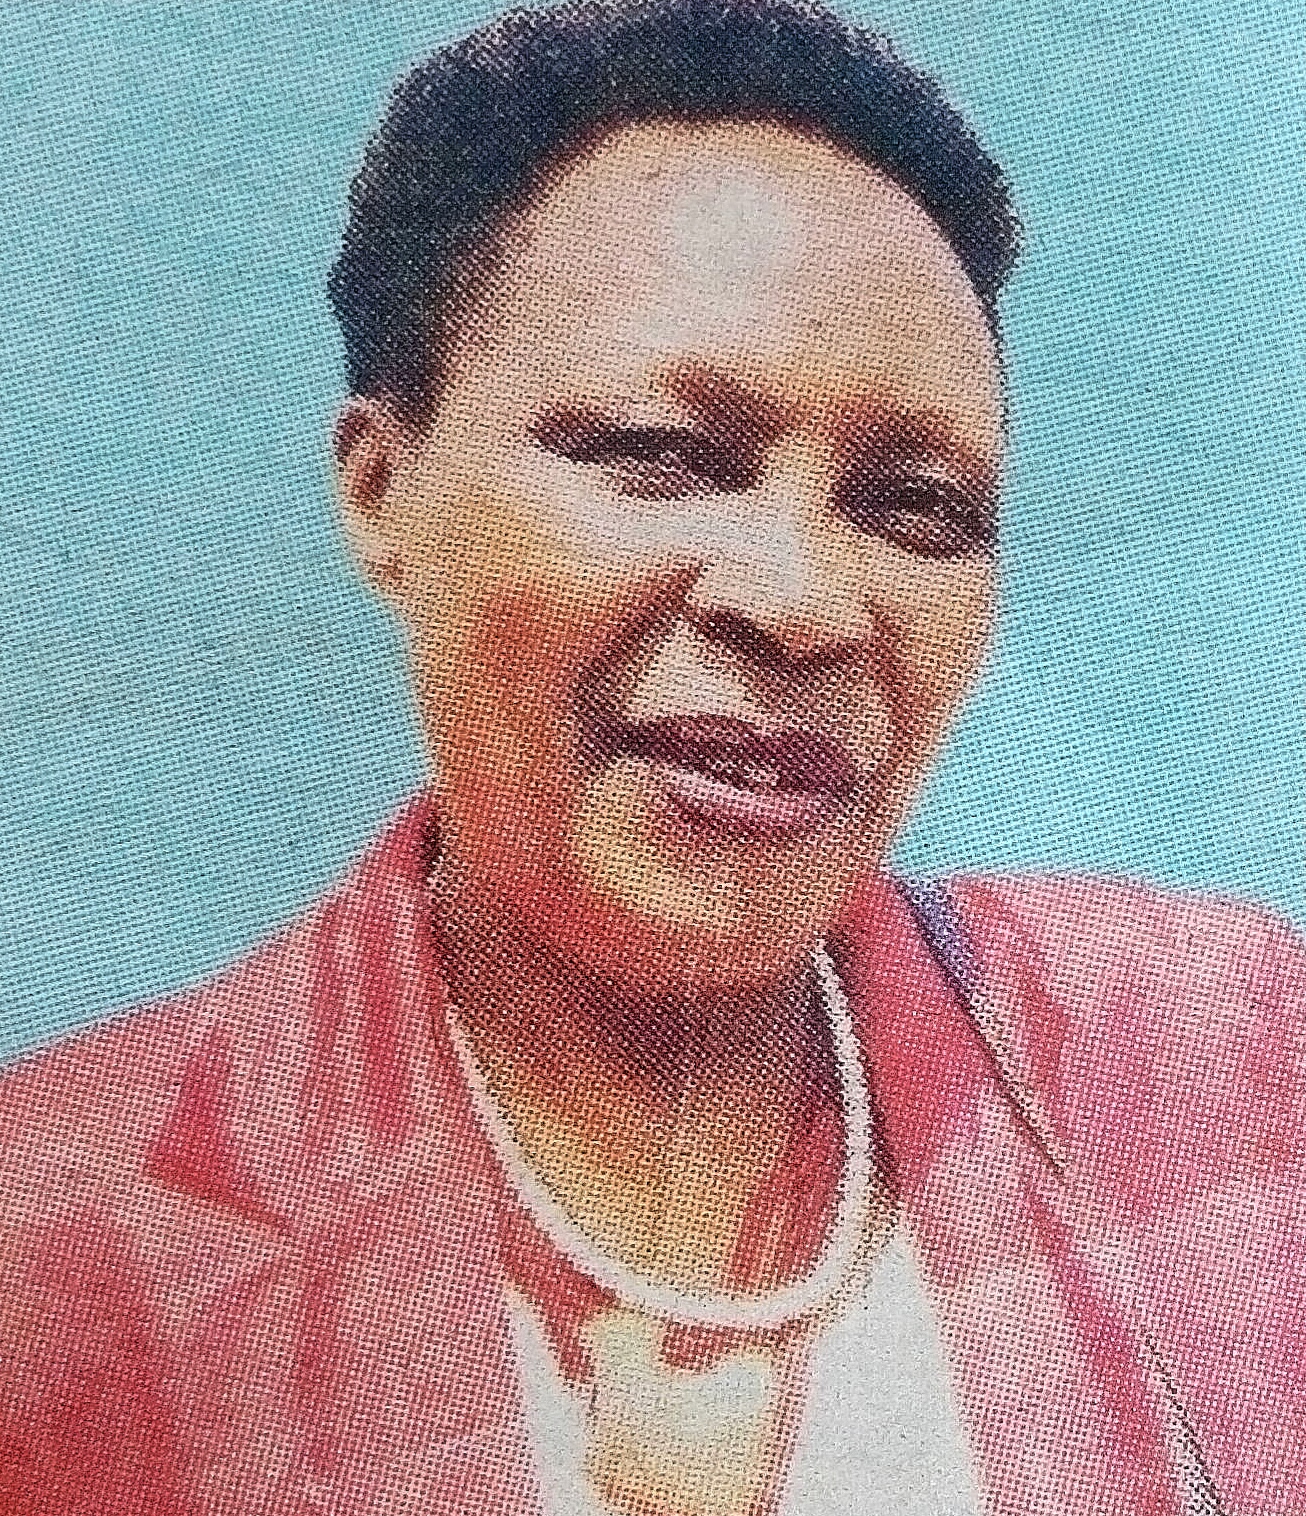 Obituary Image of Elizabeth Munyiva Nyaunyo, HSC,